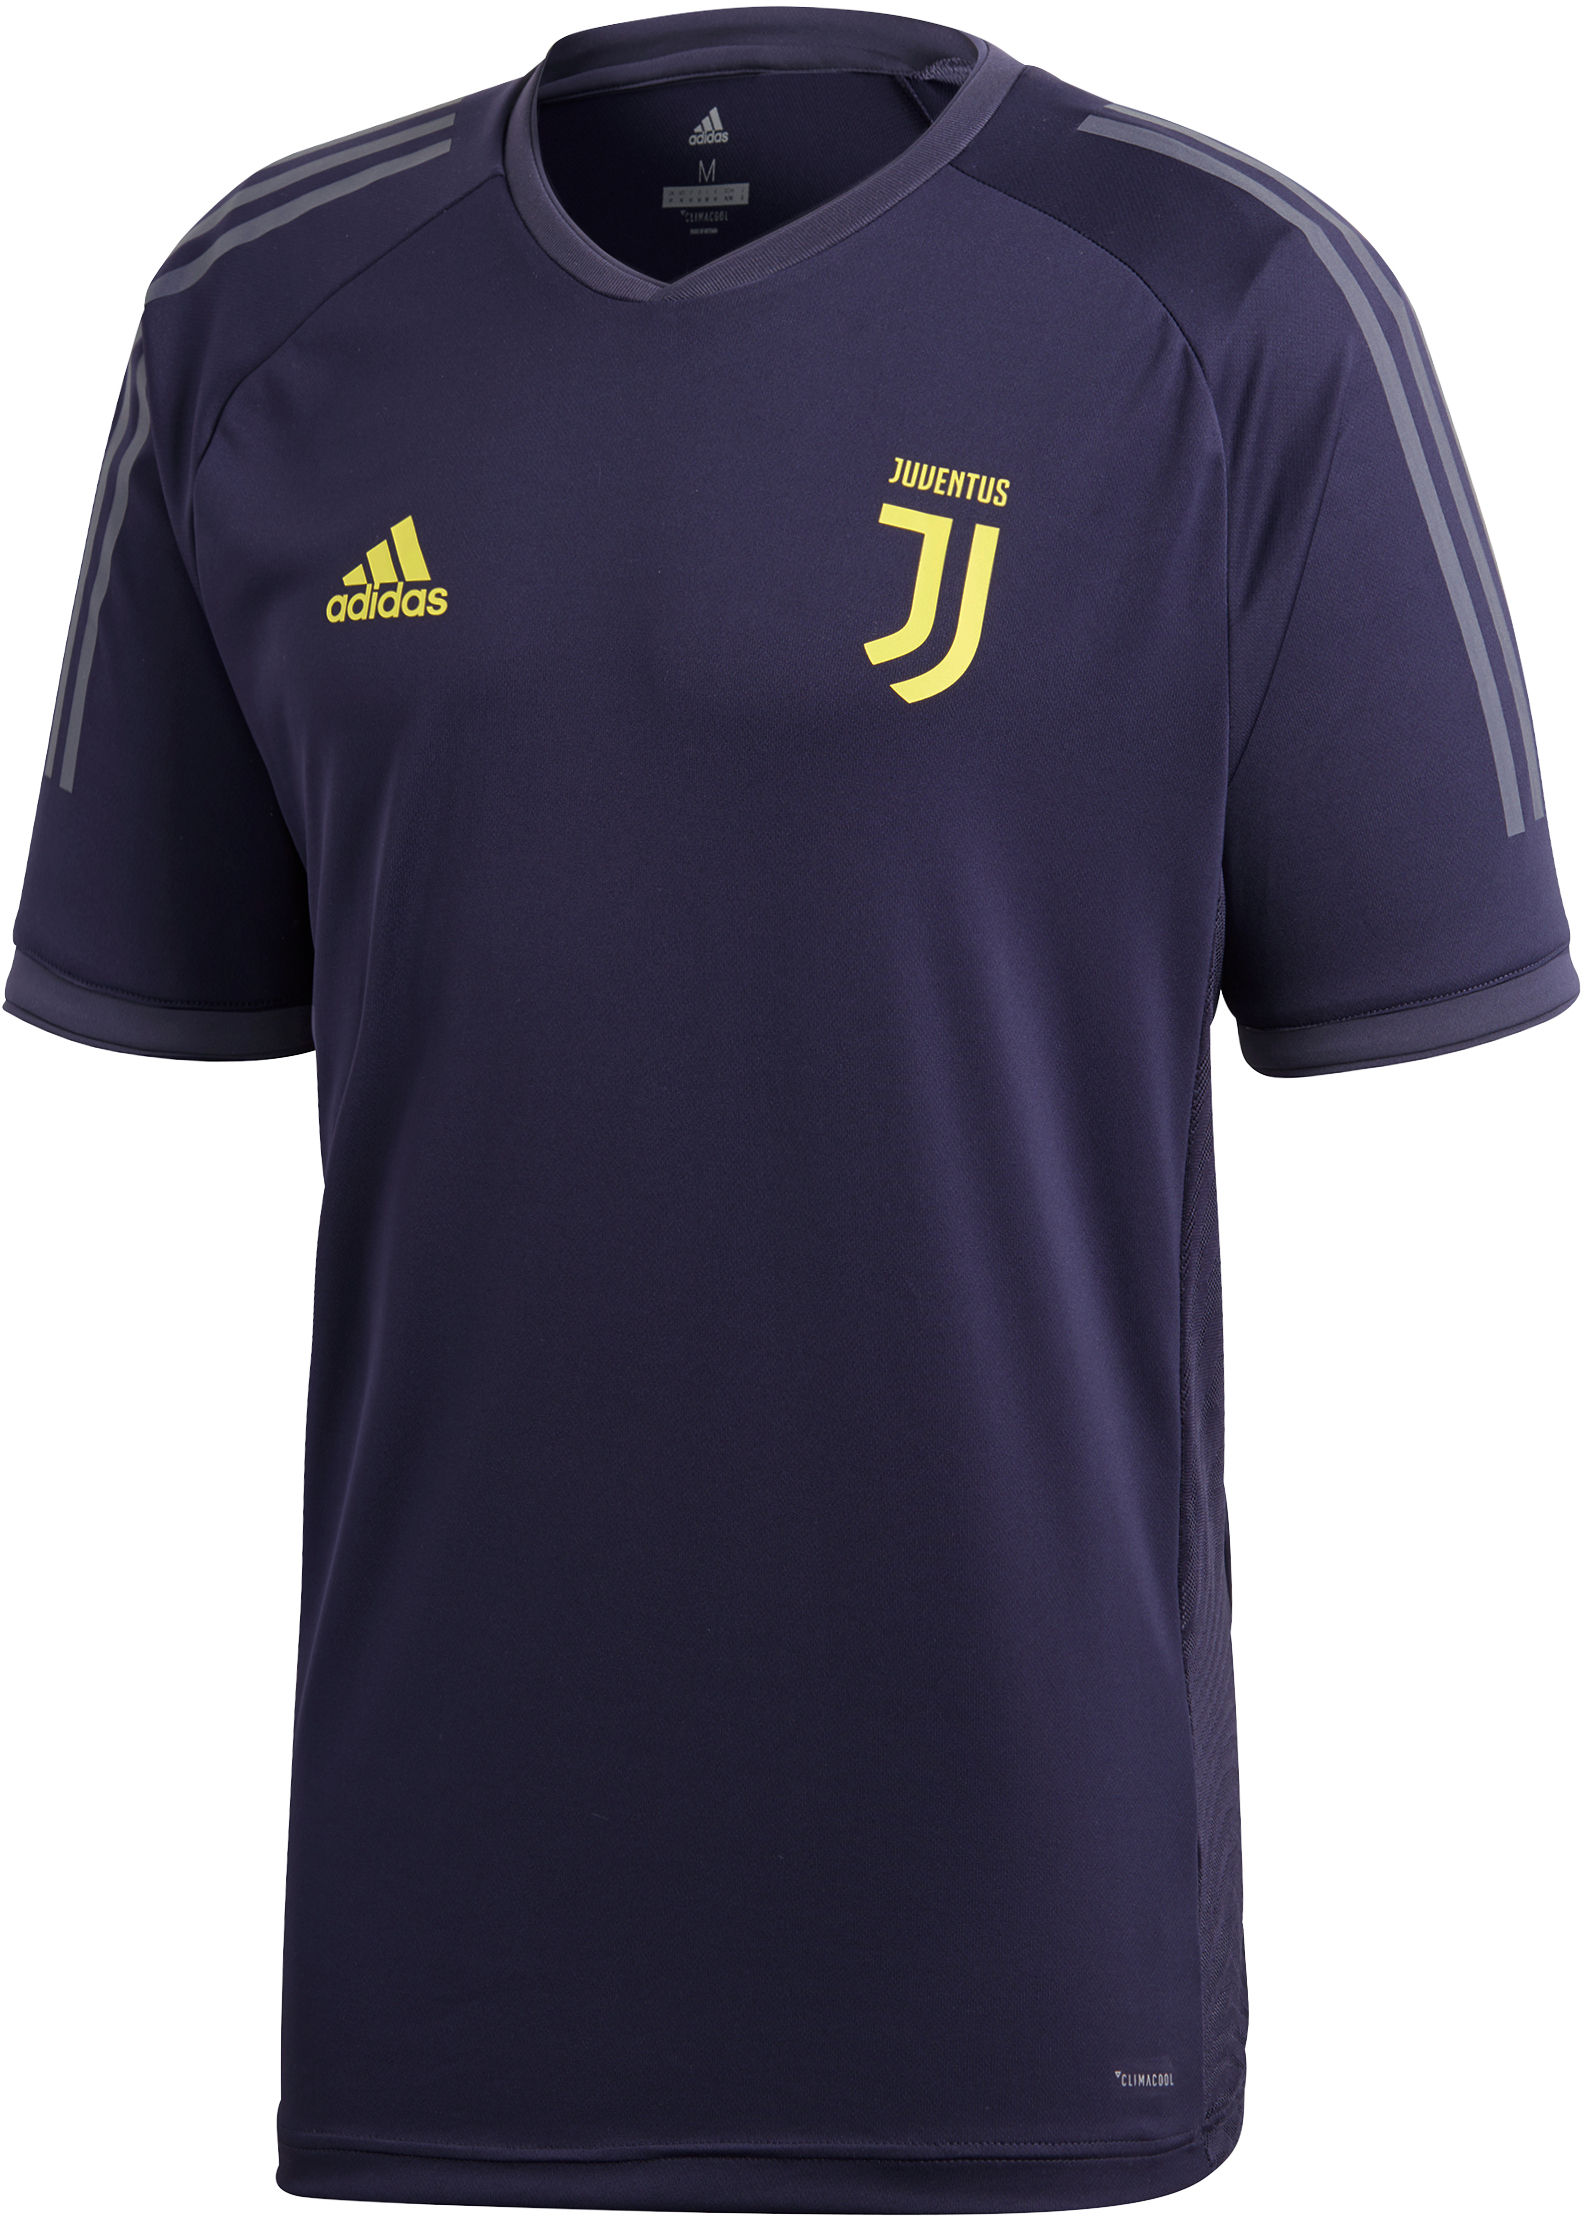 Camiseta adidas Juventus Ultimate Training Jersey